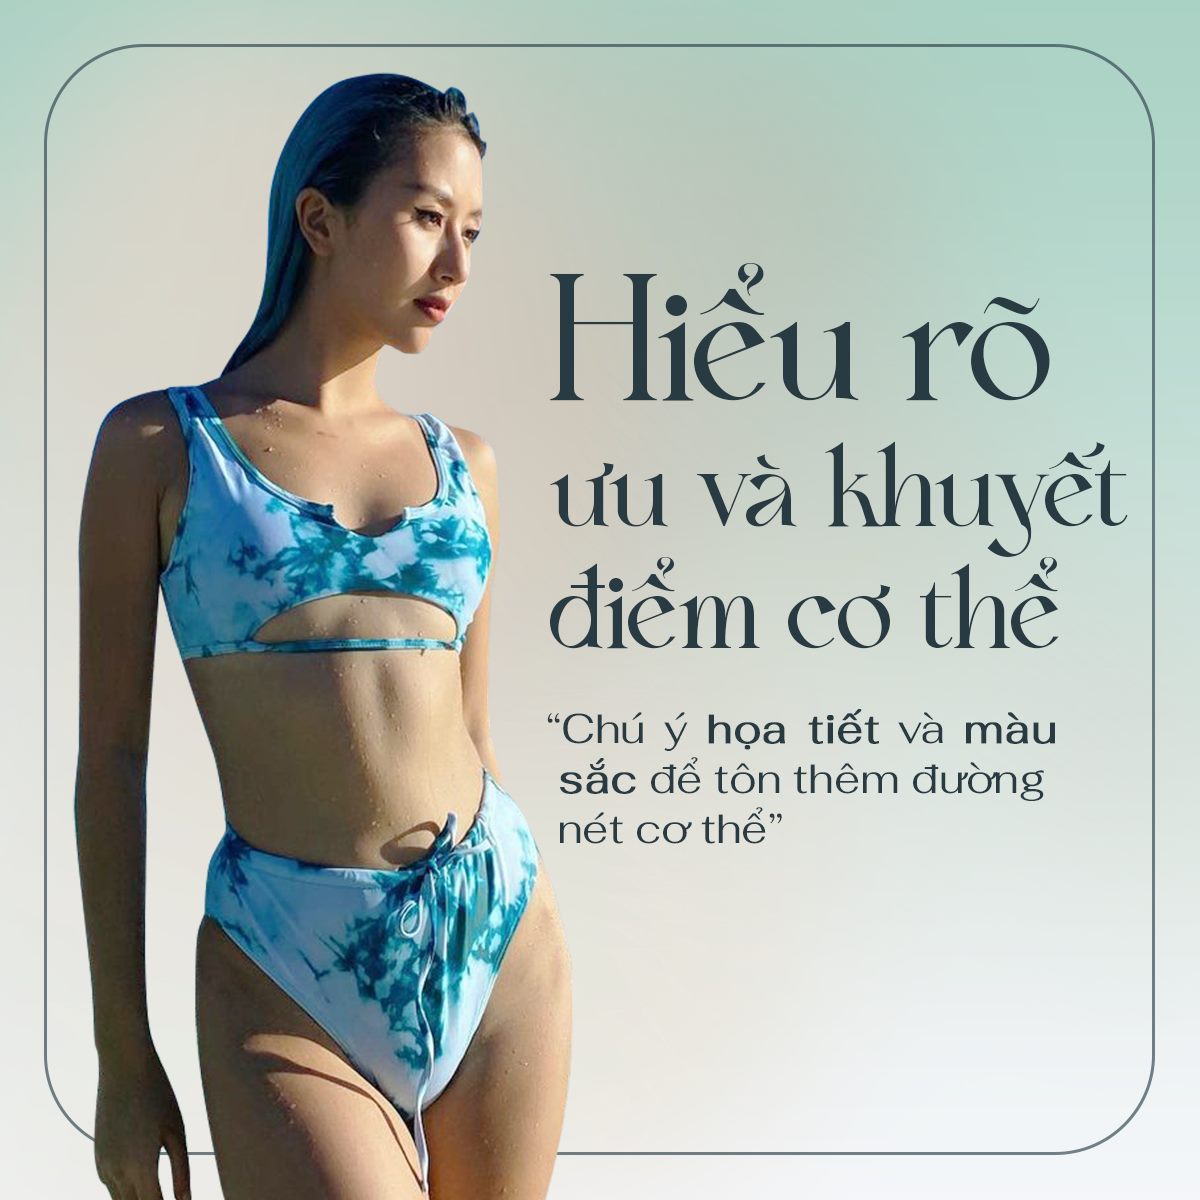 Quỳnh Anh Shyn tiết lộ cách mặc bikini siêu nhỏ, hot nhất là bộ ảnh tạo dáng giữa đàn bò - 5